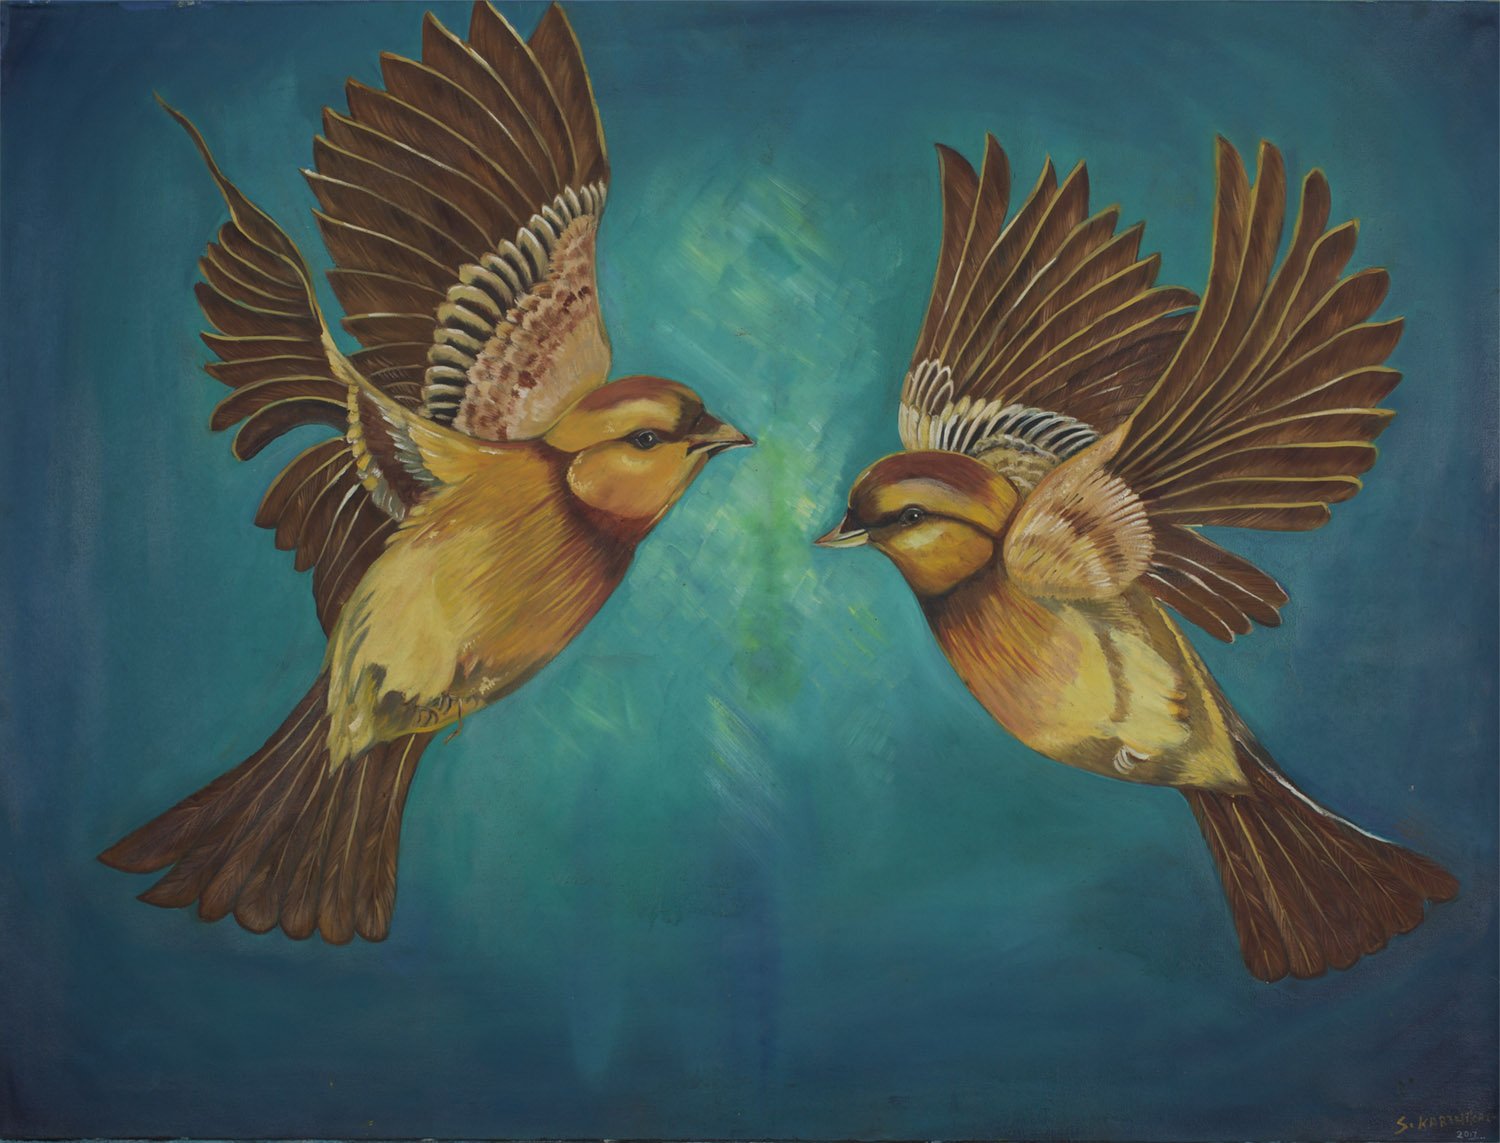 Bird Series 3|S. Karthika- Oil on Canvas, 2018, 36 x 48 inches